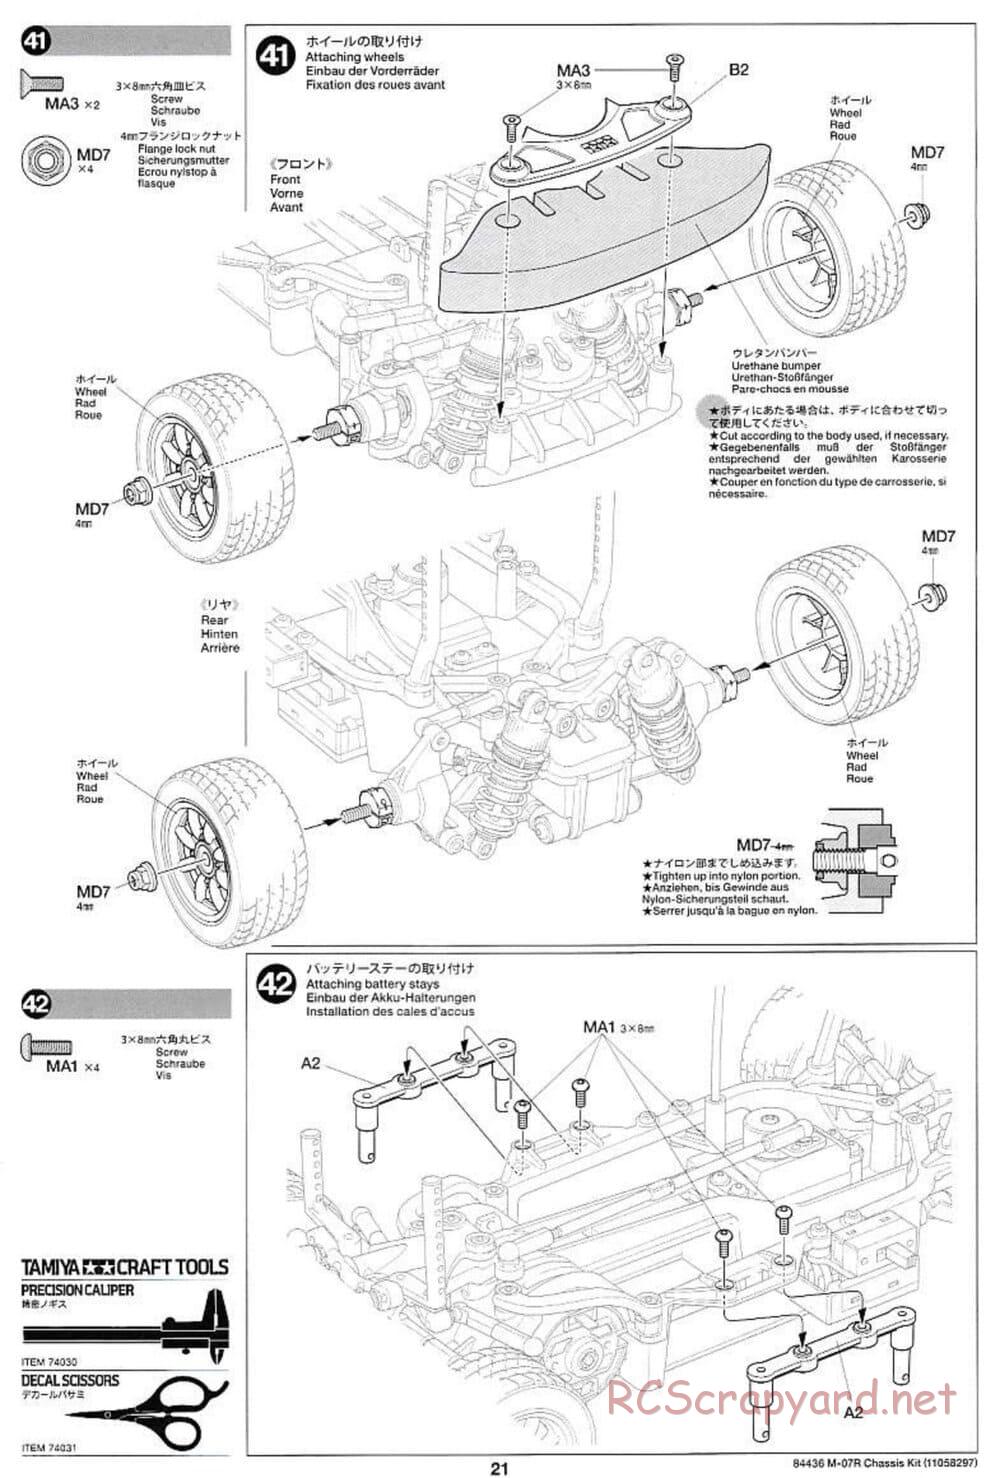 Tamiya - M-07R Chassis - Manual - Page 21